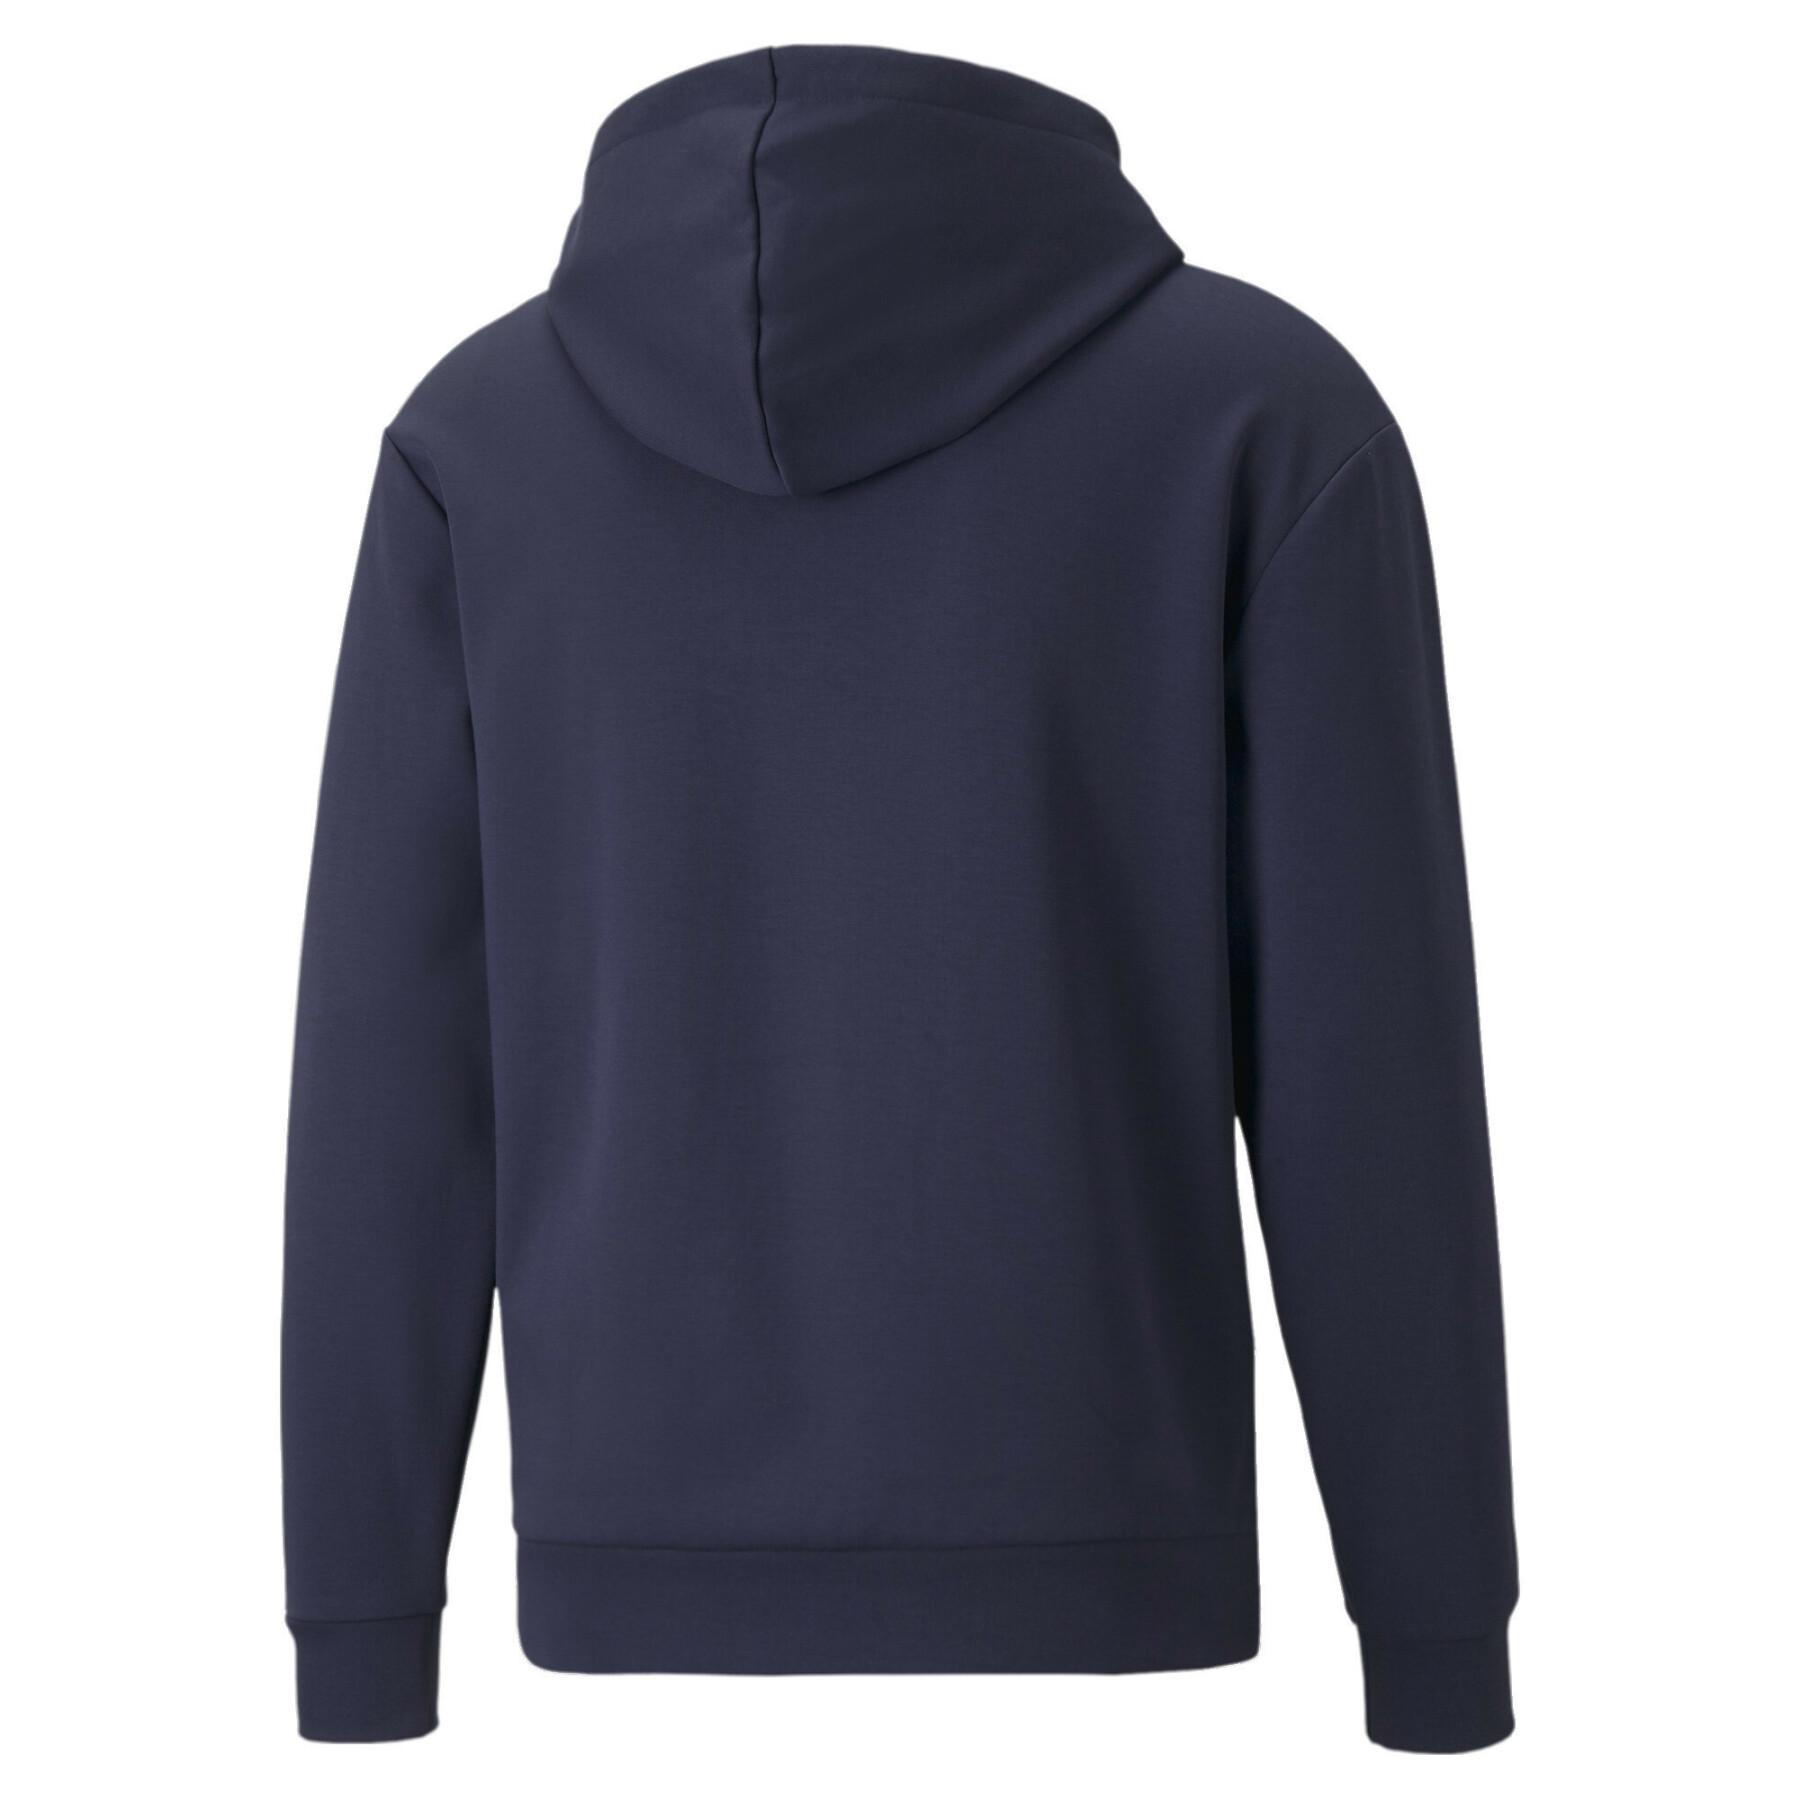 Sweatshirt Half-zip Puma Rad/Cal